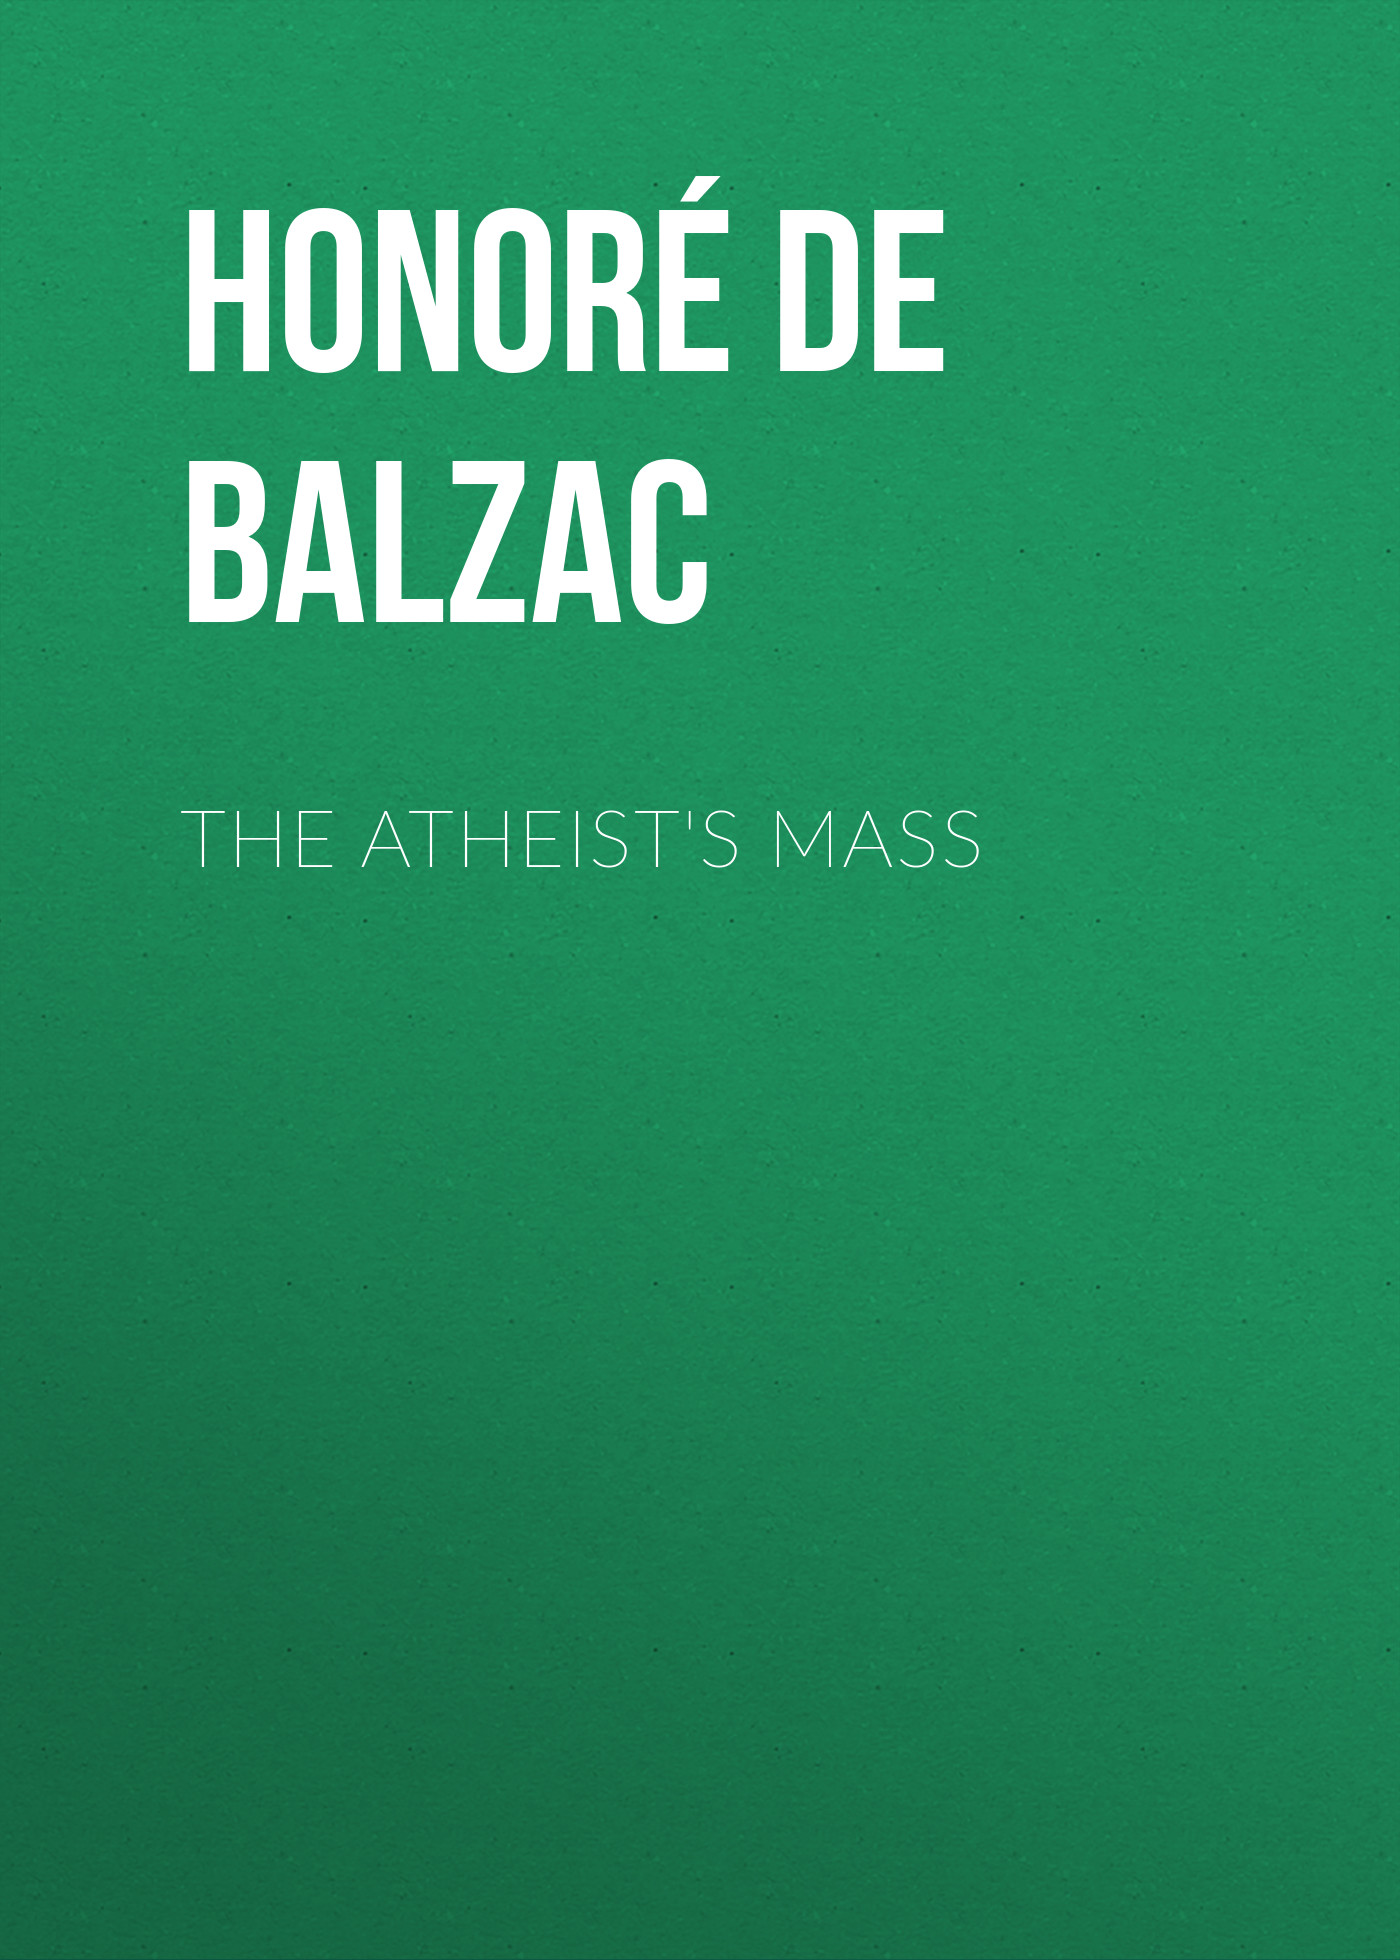 Книга The Atheist's Mass из серии , созданная Honoré Balzac, может относится к жанру Литература 19 века, Зарубежная старинная литература, Зарубежная классика. Стоимость электронной книги The Atheist's Mass с идентификатором 25019995 составляет 0 руб.